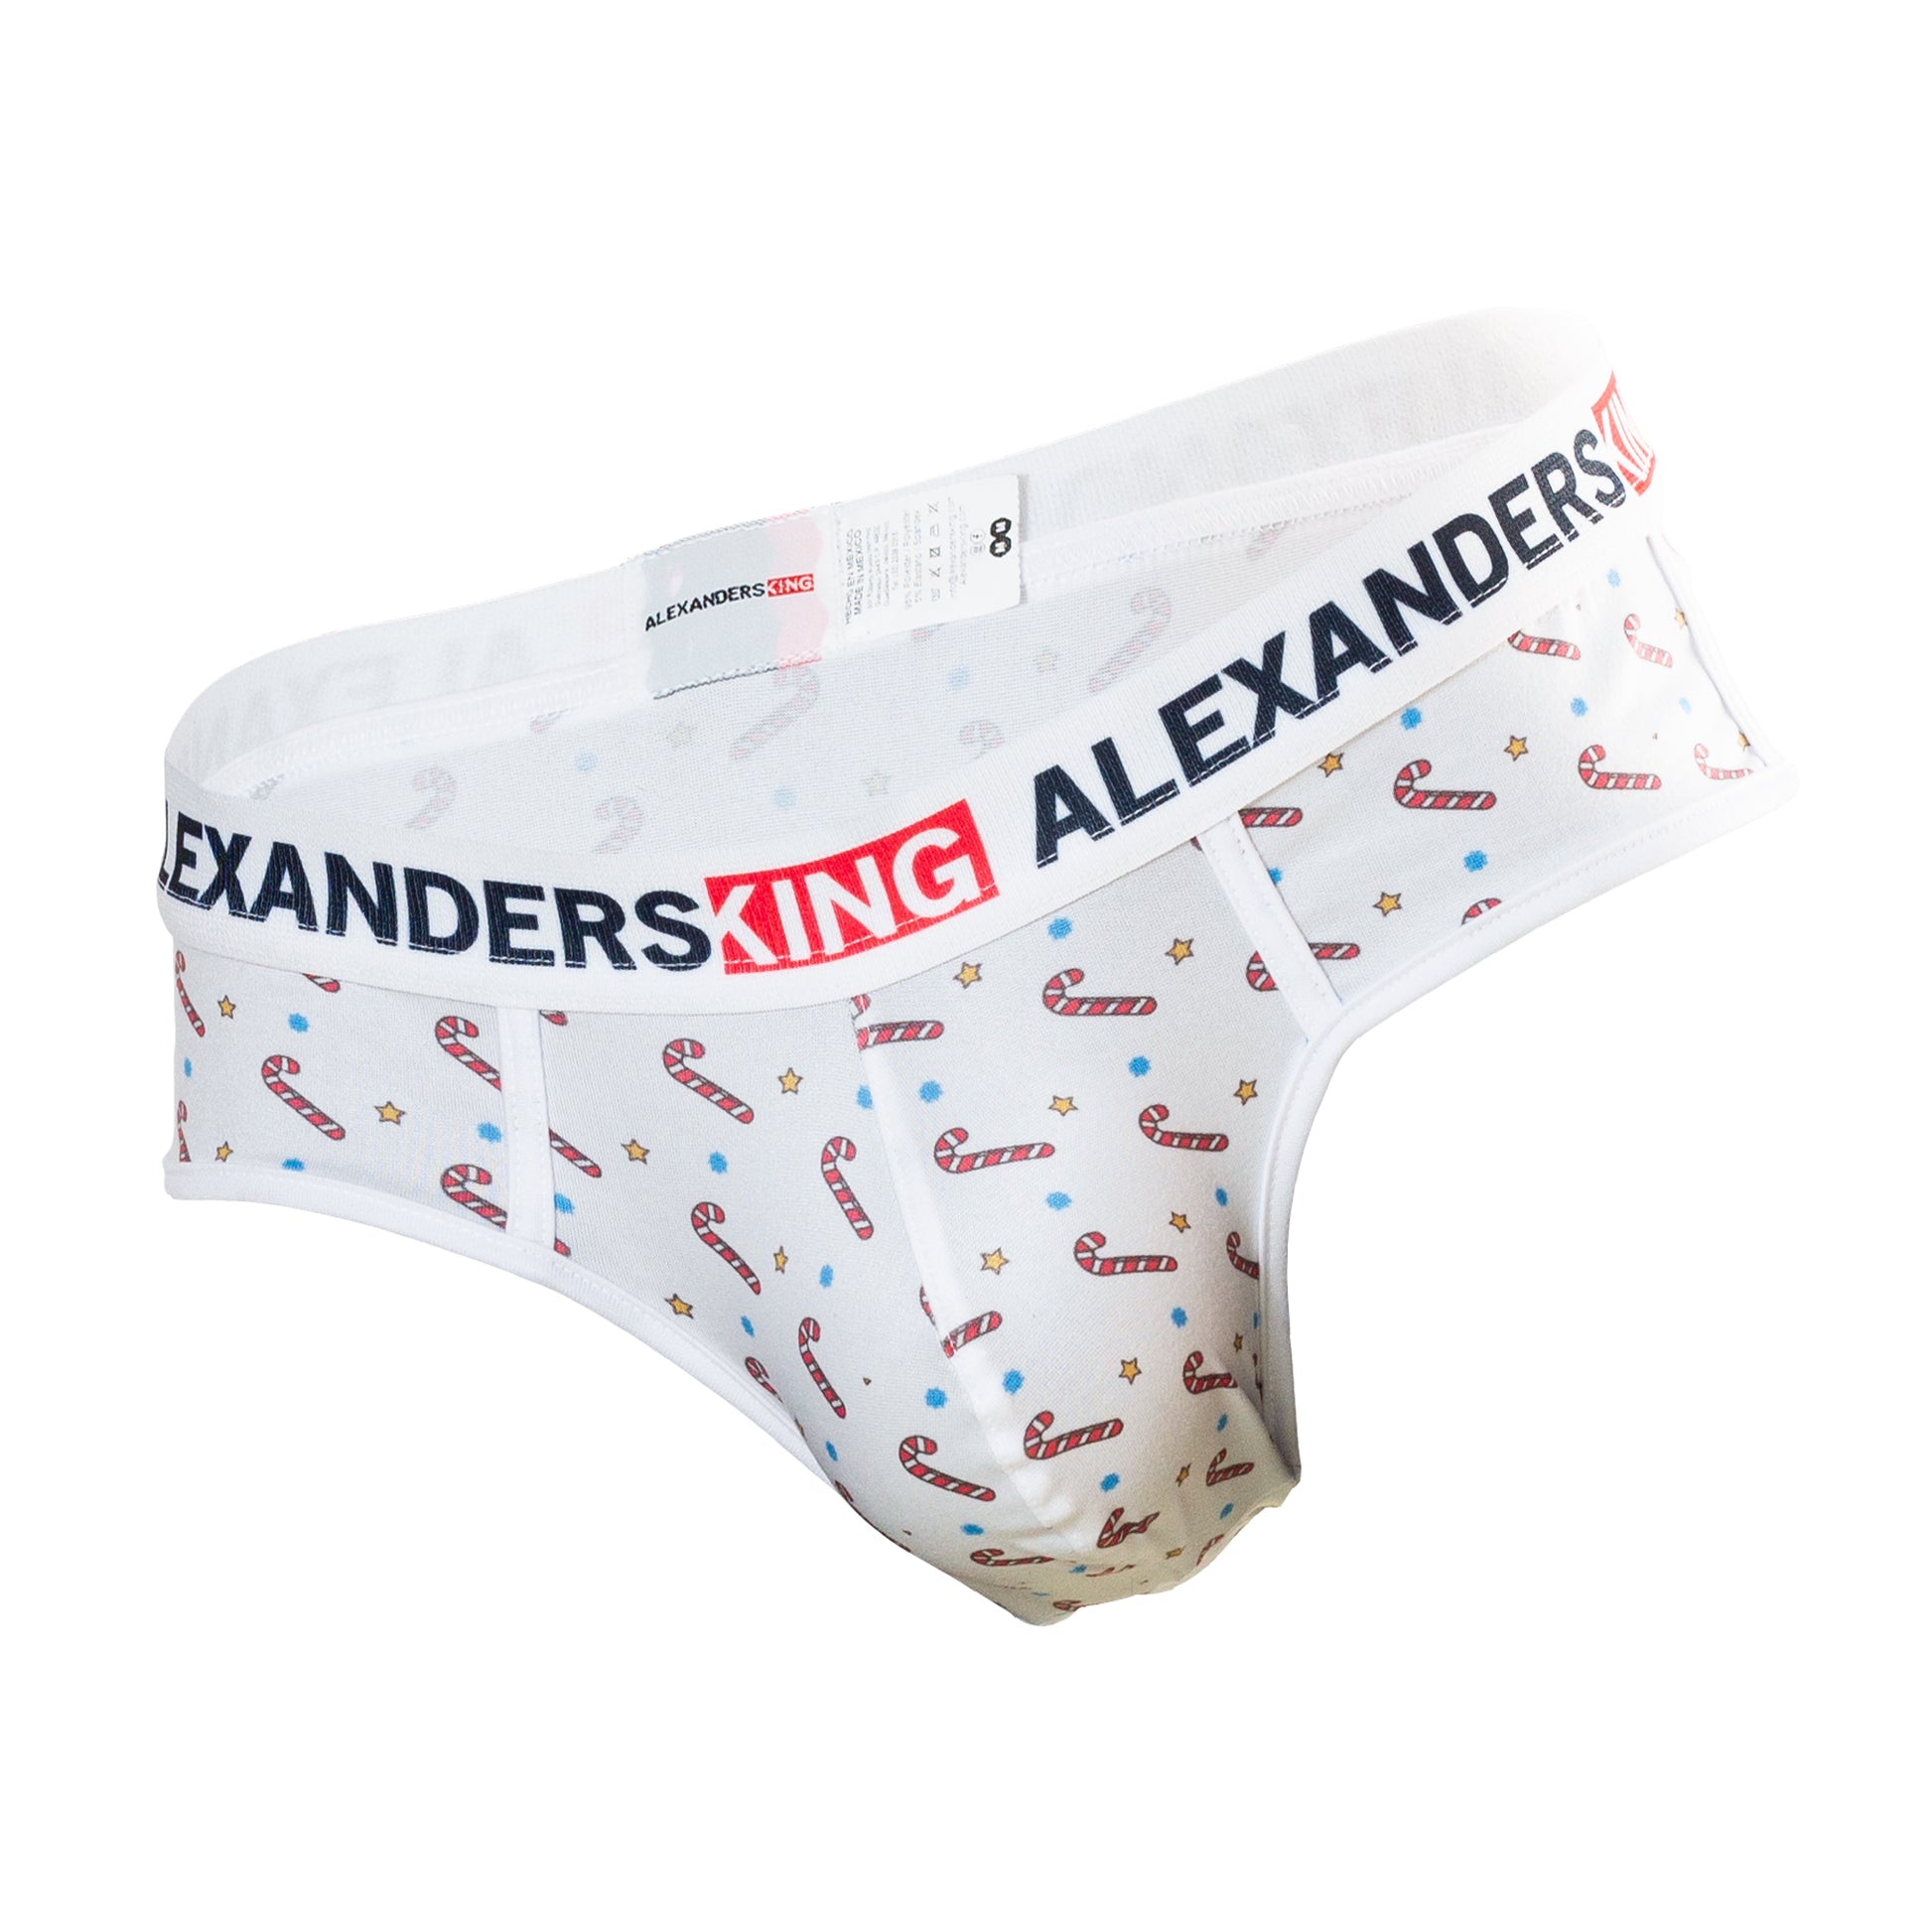 TP0155 Brief Candy Cane Skinit – AlexandersKing Underwear